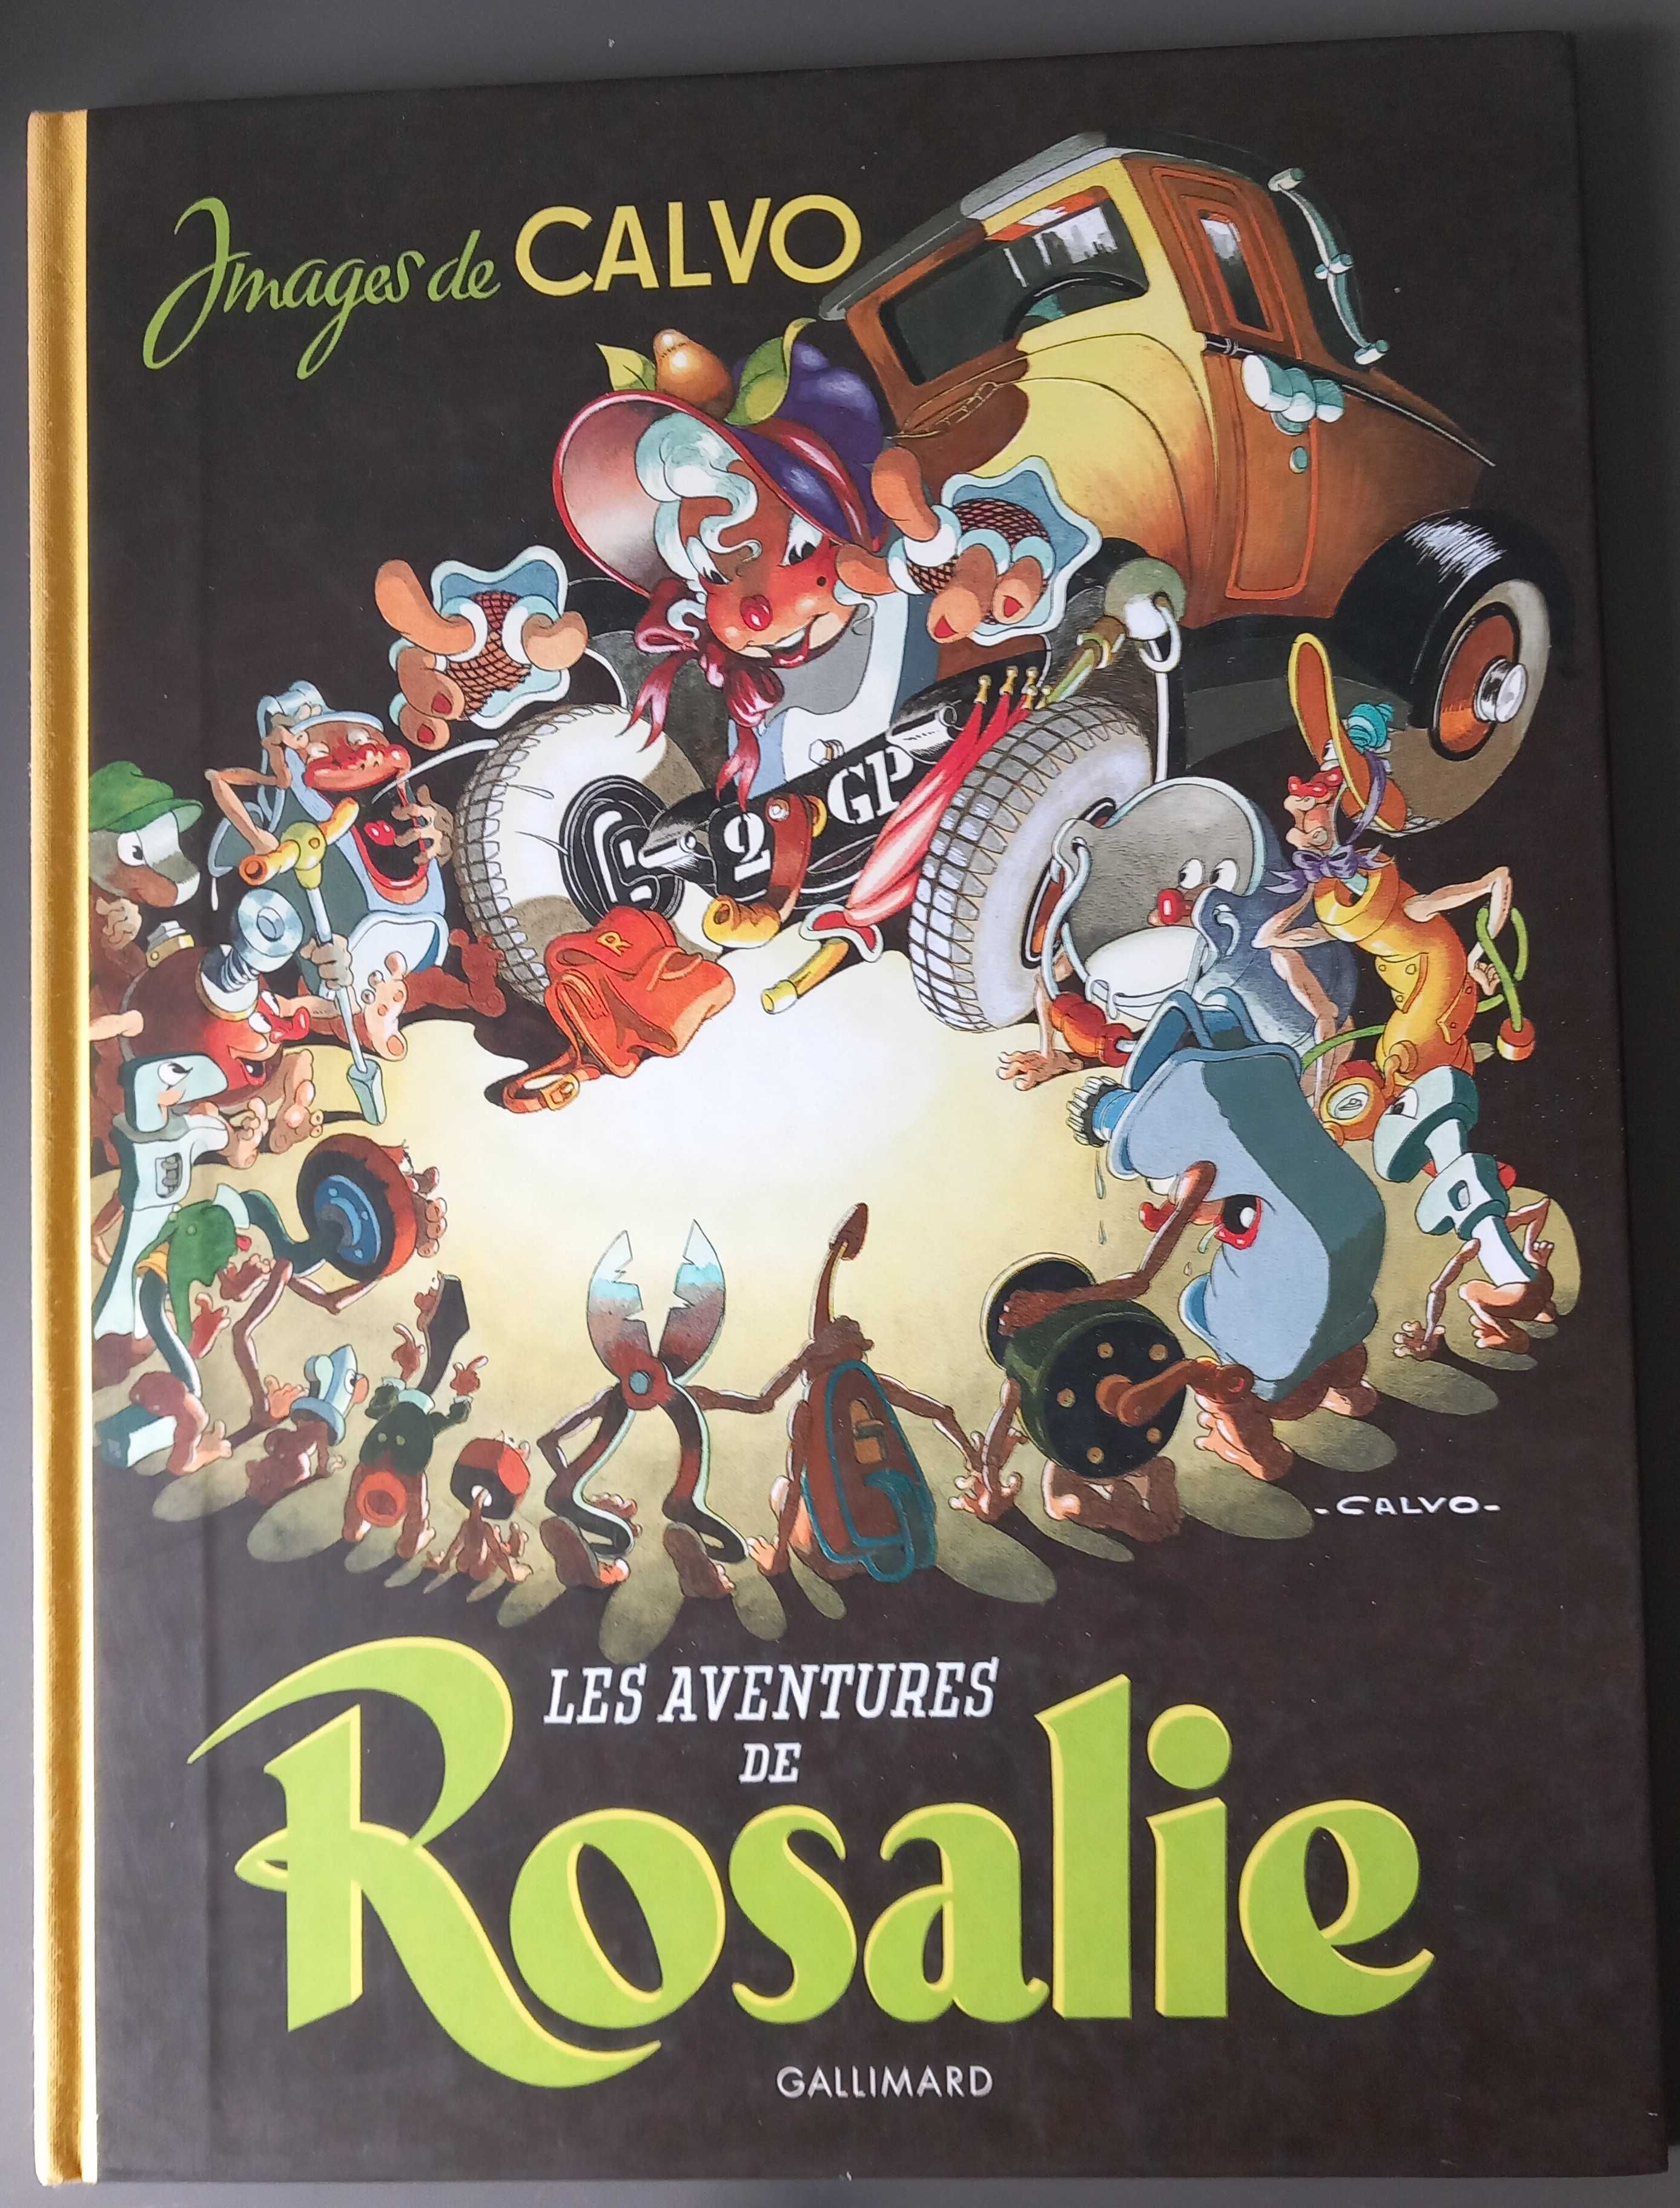 Calvo- Les Aventures de Rosalie [Gallimard] clássico da BD francófona